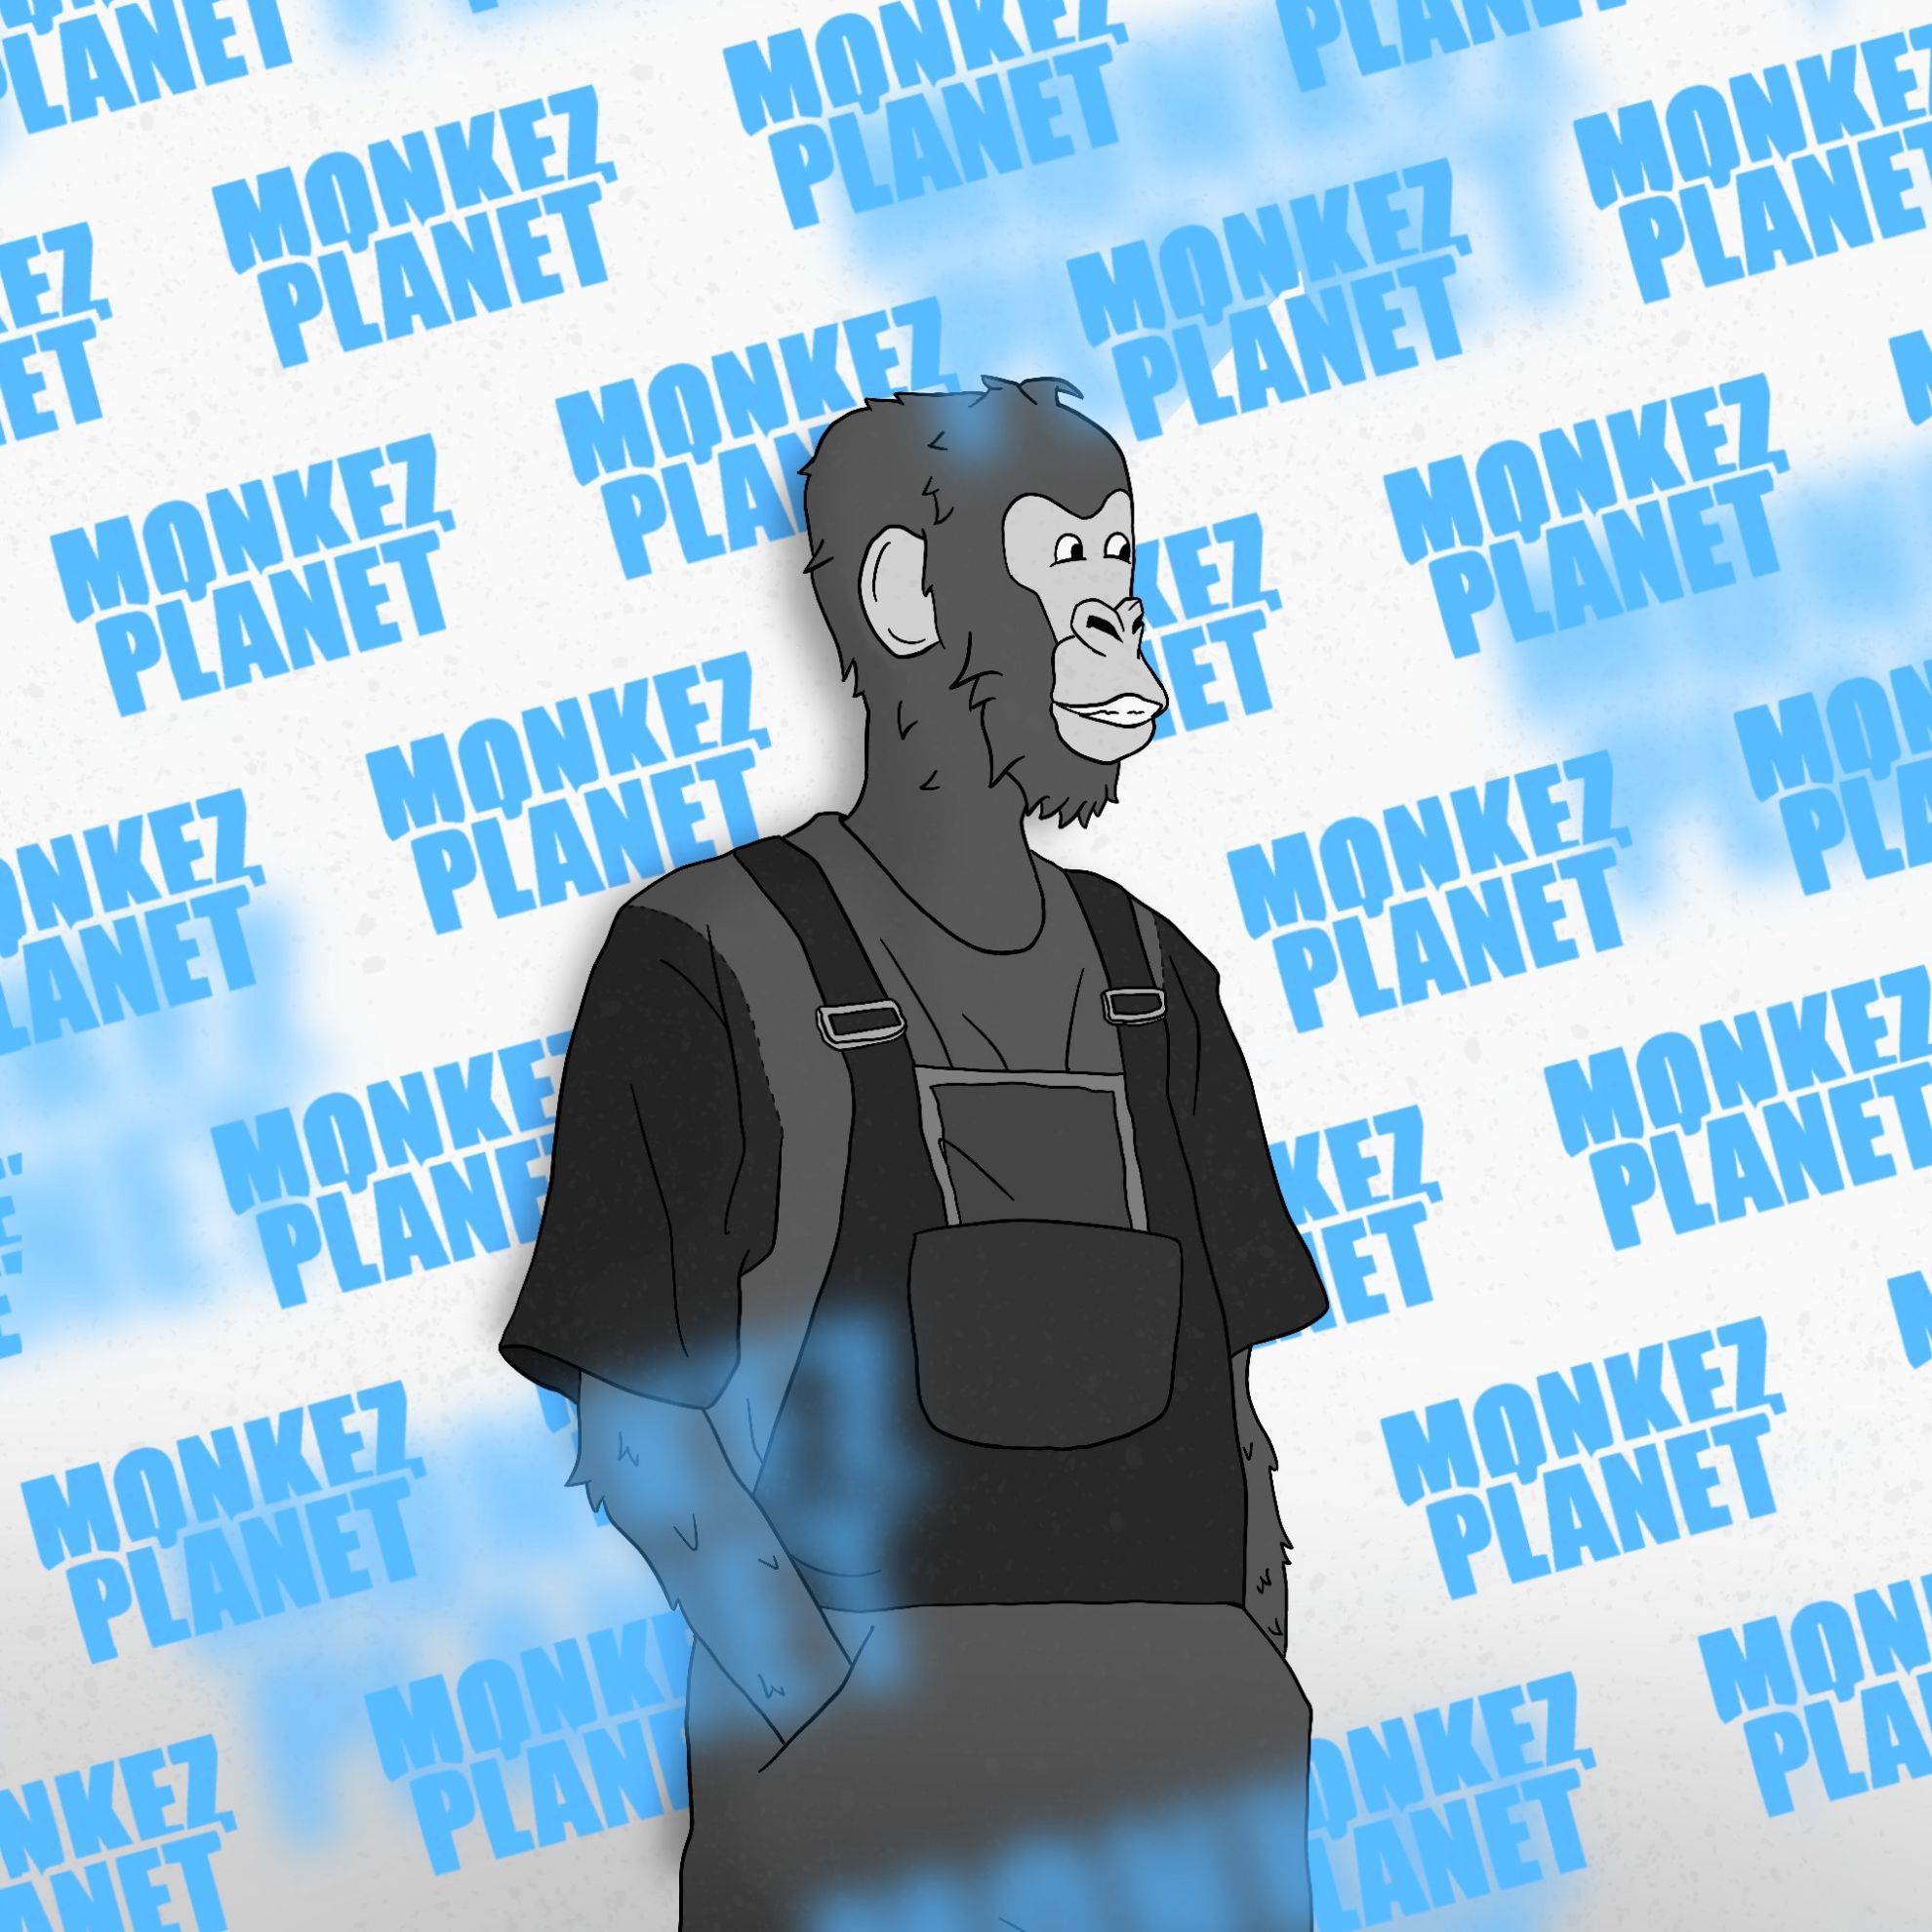 Monkez Planet - What is it?